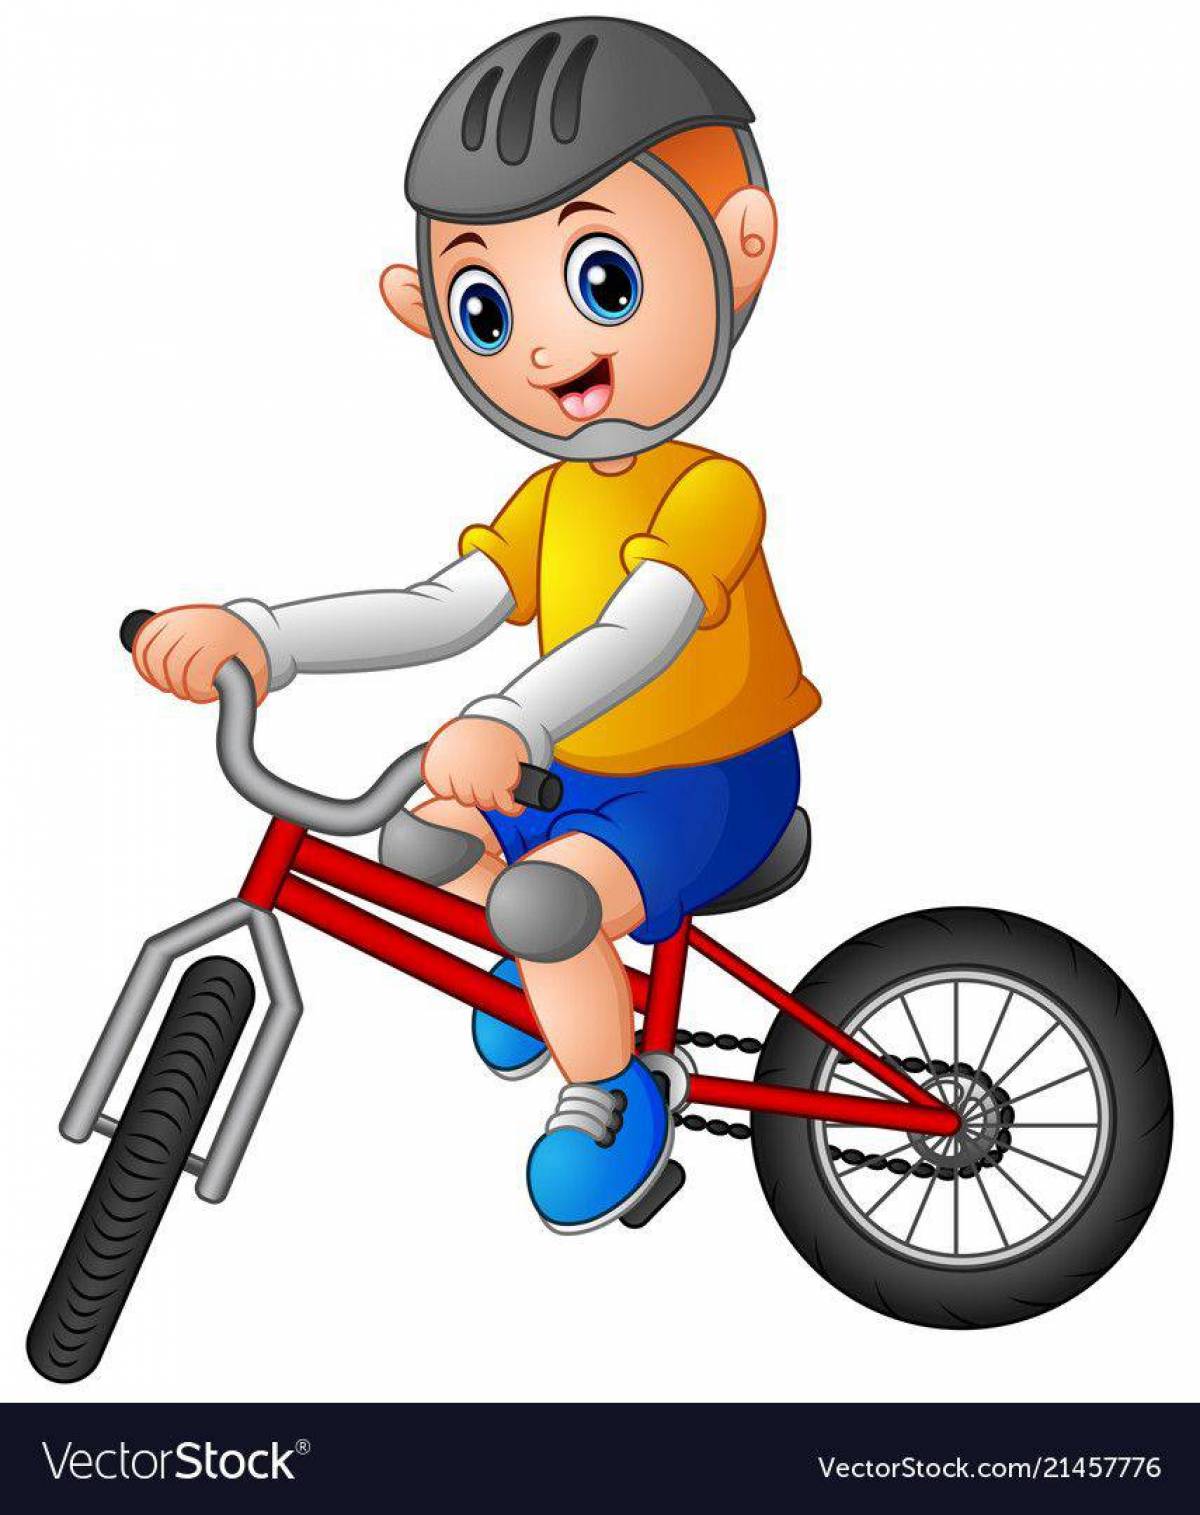 Мальчик на велосипеде #9